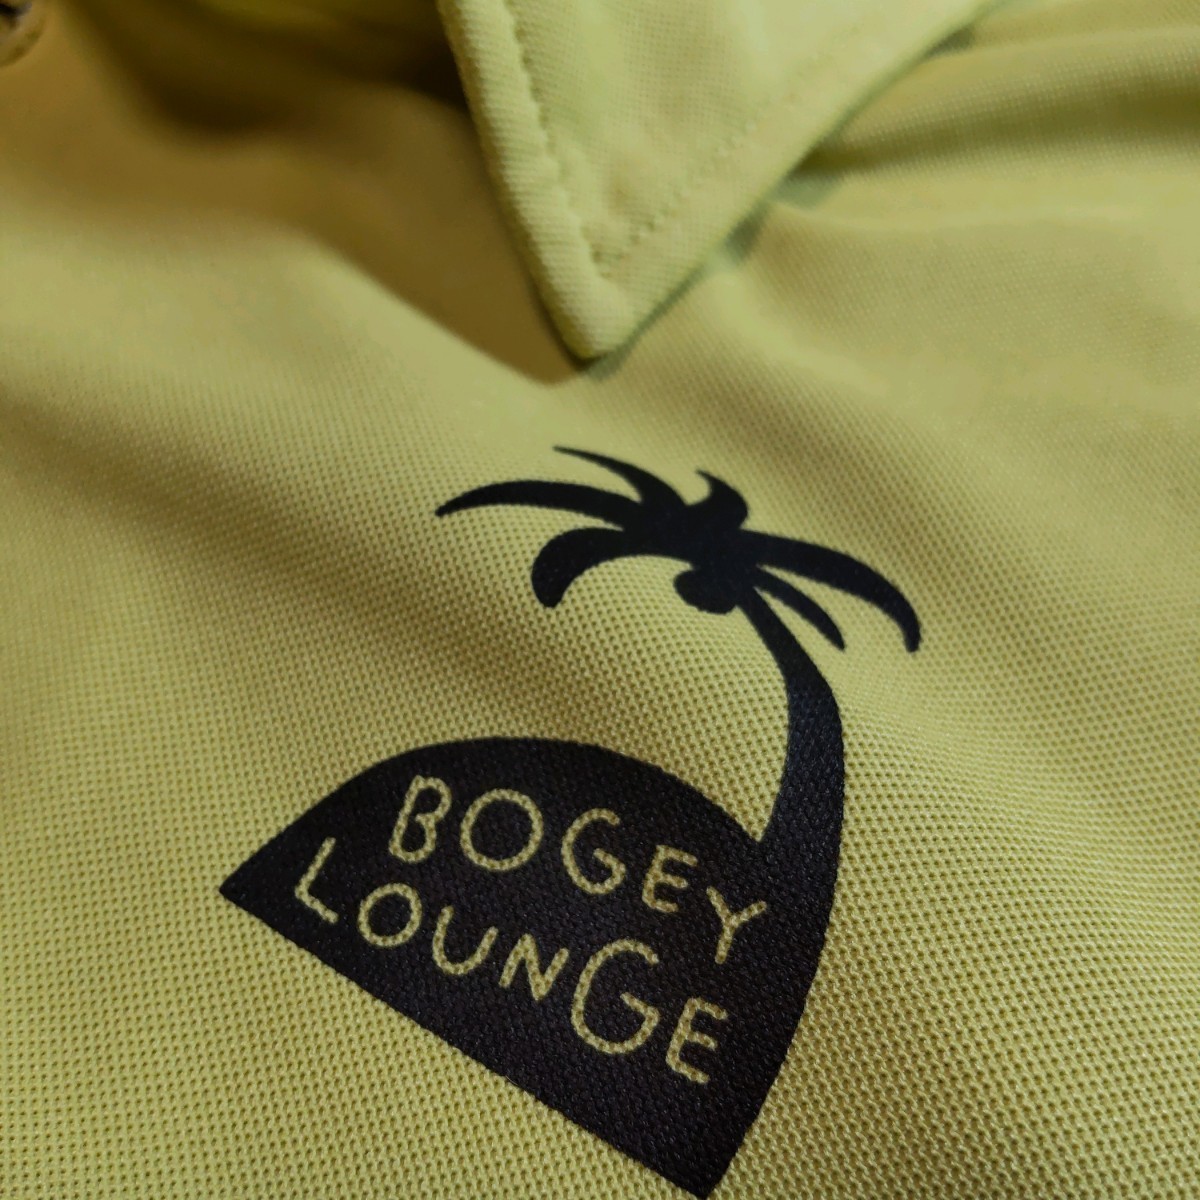 新品 M ボギー ラウンジ BOGEY LOUNGE ポップグラフィック シャツ お洒落はゴルフの基本 ボギーラウンジです M サイズ_画像4